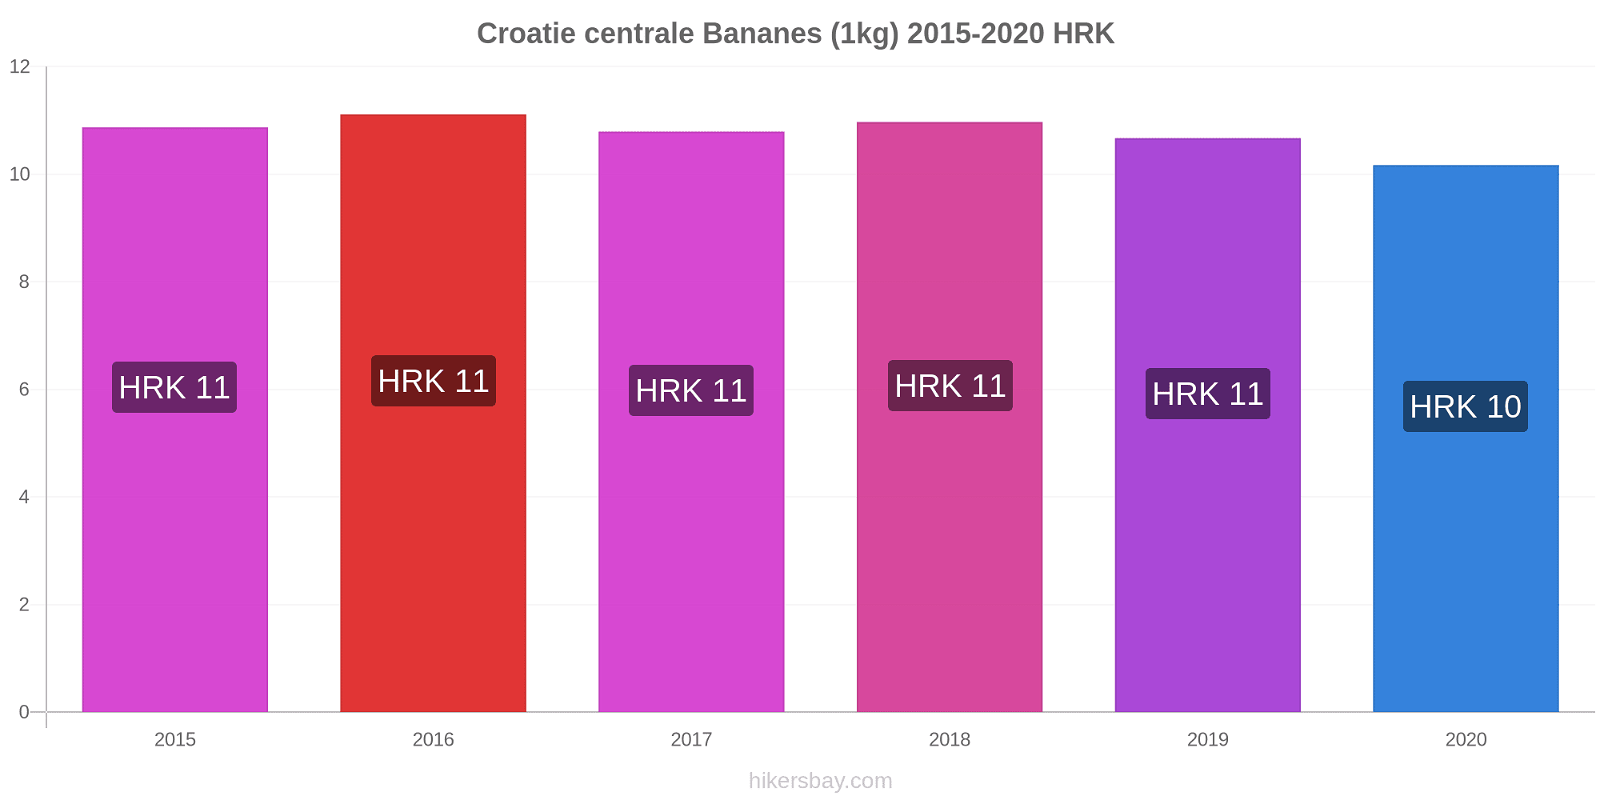 Croatie centrale changements de prix Bananes (1kg) hikersbay.com